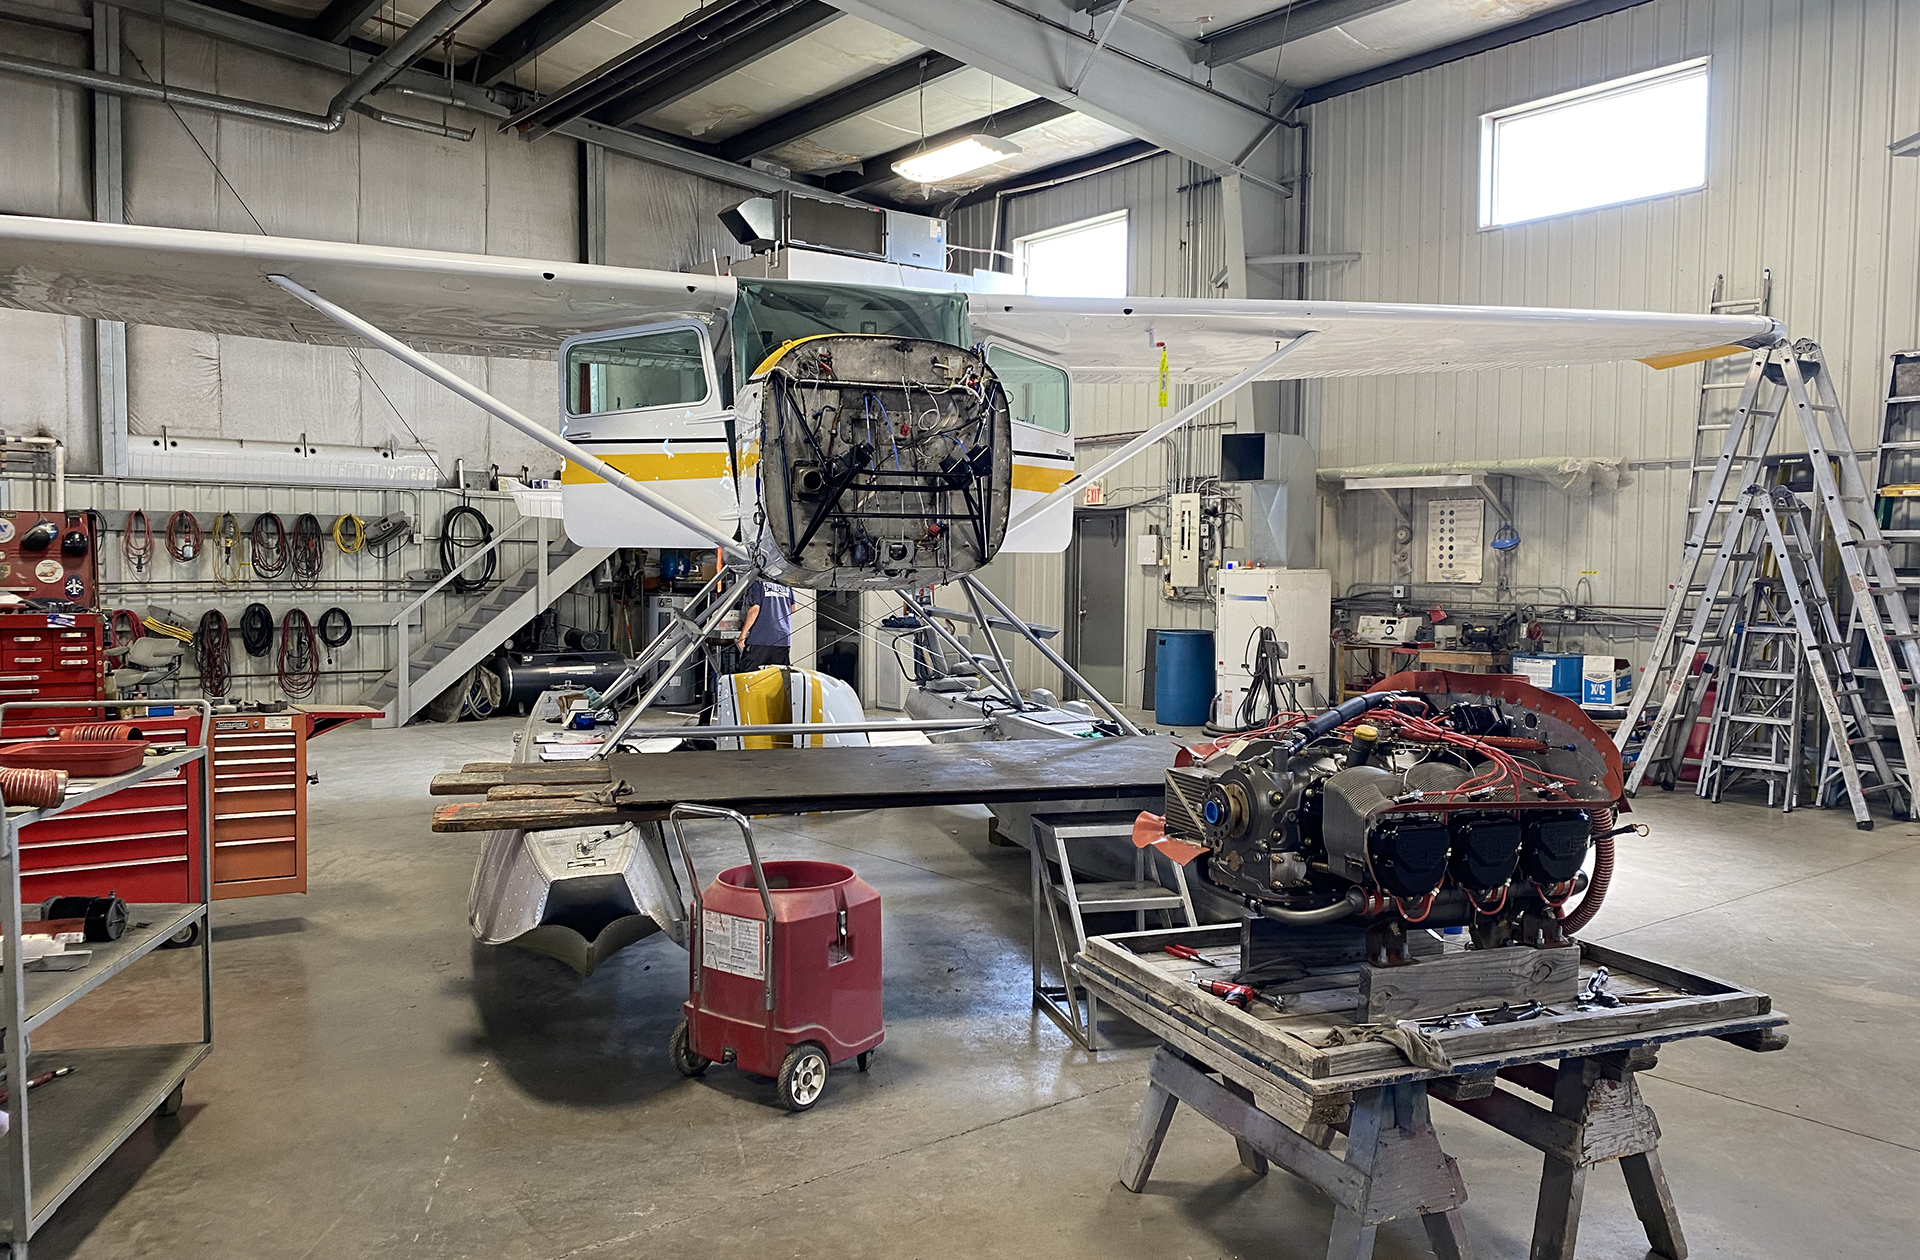 Propeller maintenance on a Cessna 206 aircraft at Riverside Aircraft Maintenance